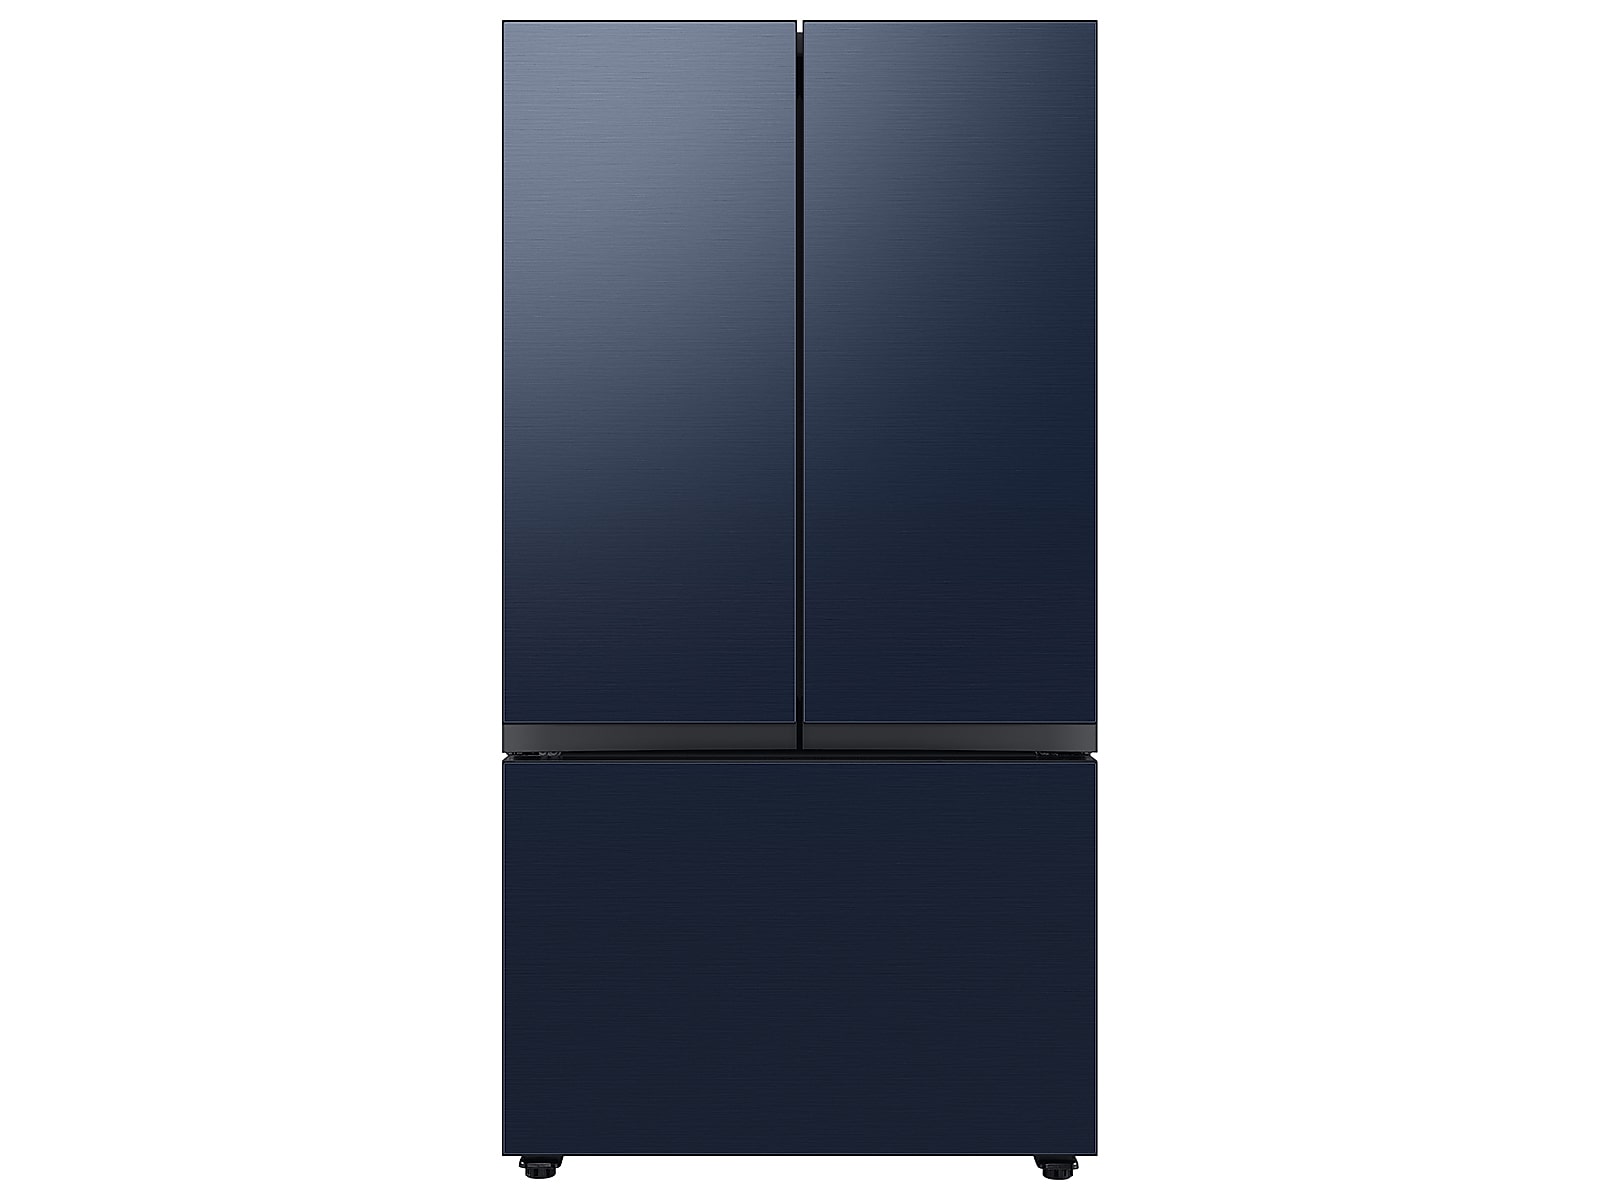 Samsung Bespoke 3-Door French Door Refrigerator in Stainless Steel (30 cu. ft.) with Beverage Center™ in Navy Steel(BNDL-1650310401997)